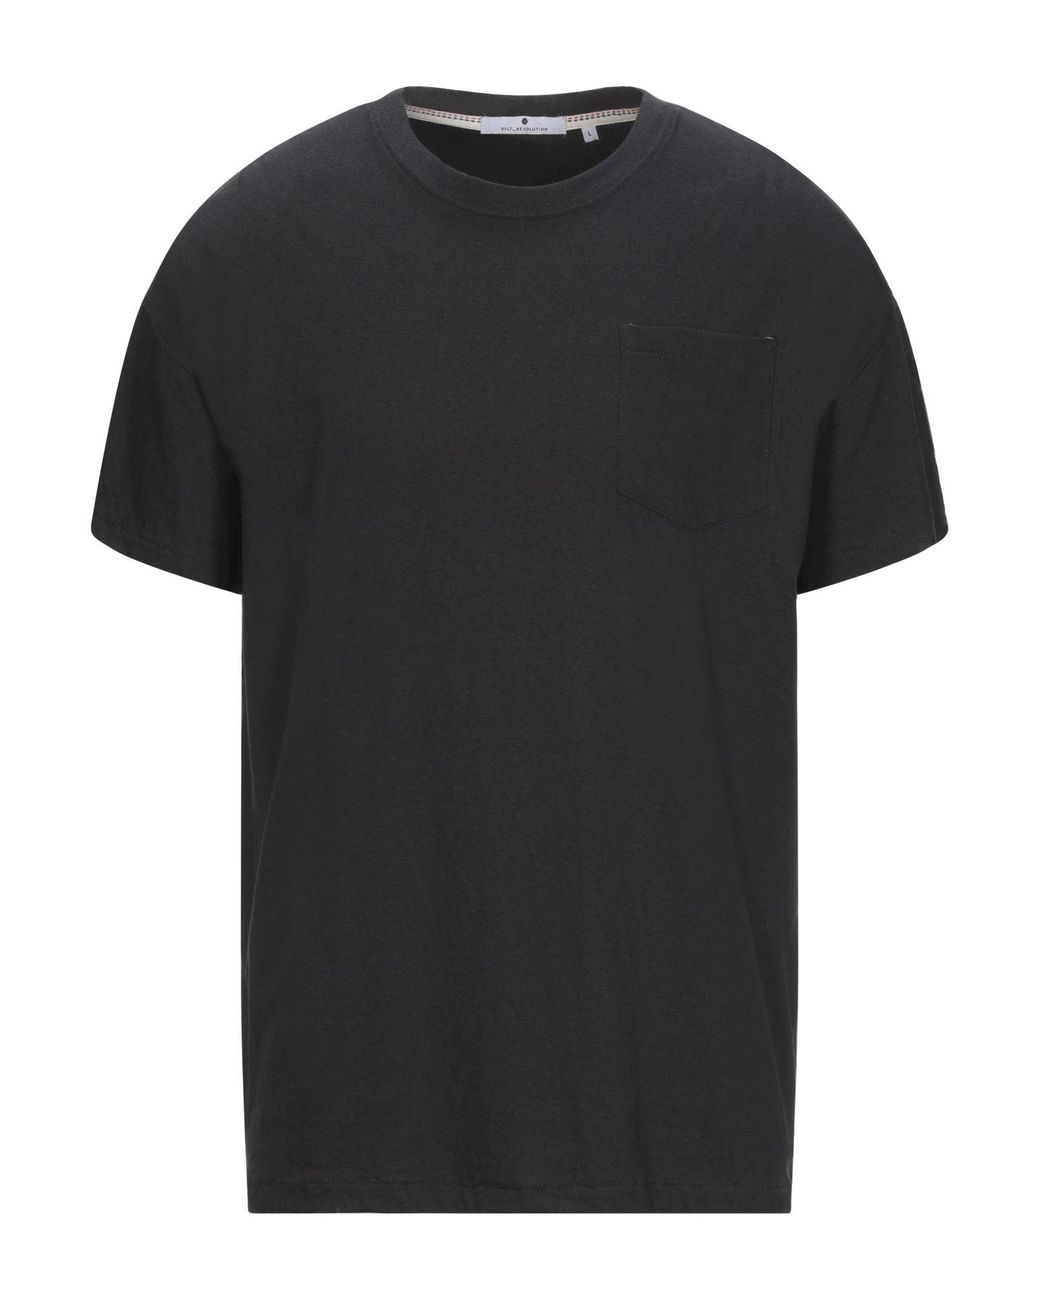 RVLT Cotton T-shirt in Black for Men - Lyst